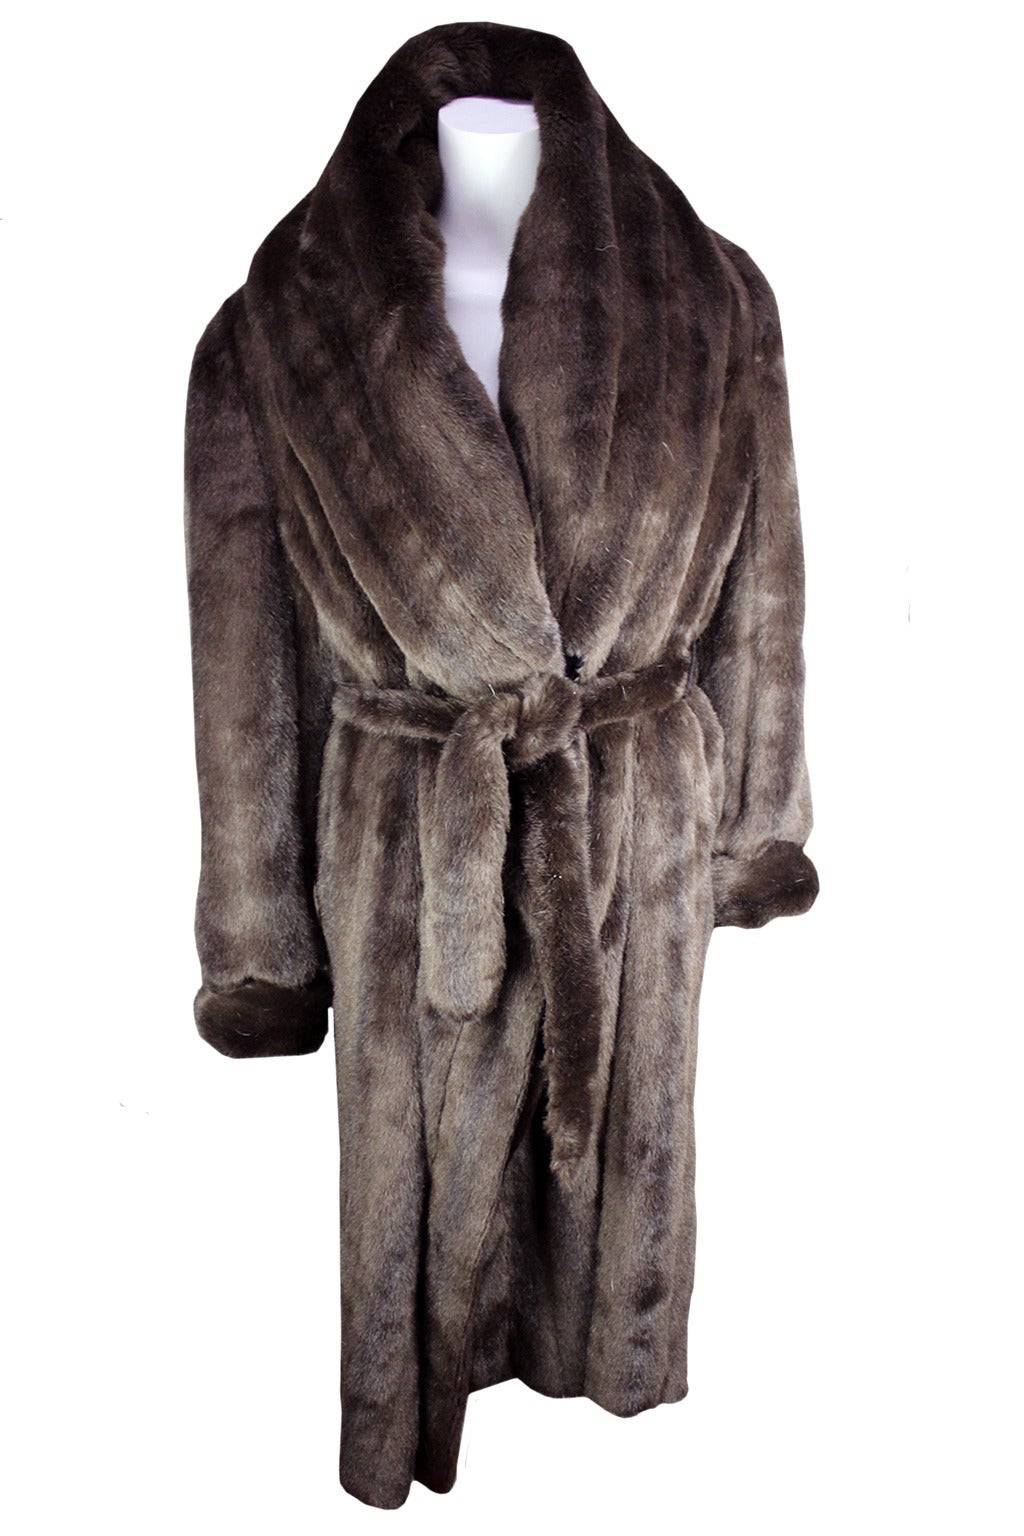 Jean Paul Gaultier Men's Faux Fur Robe Coat at 1stdibs